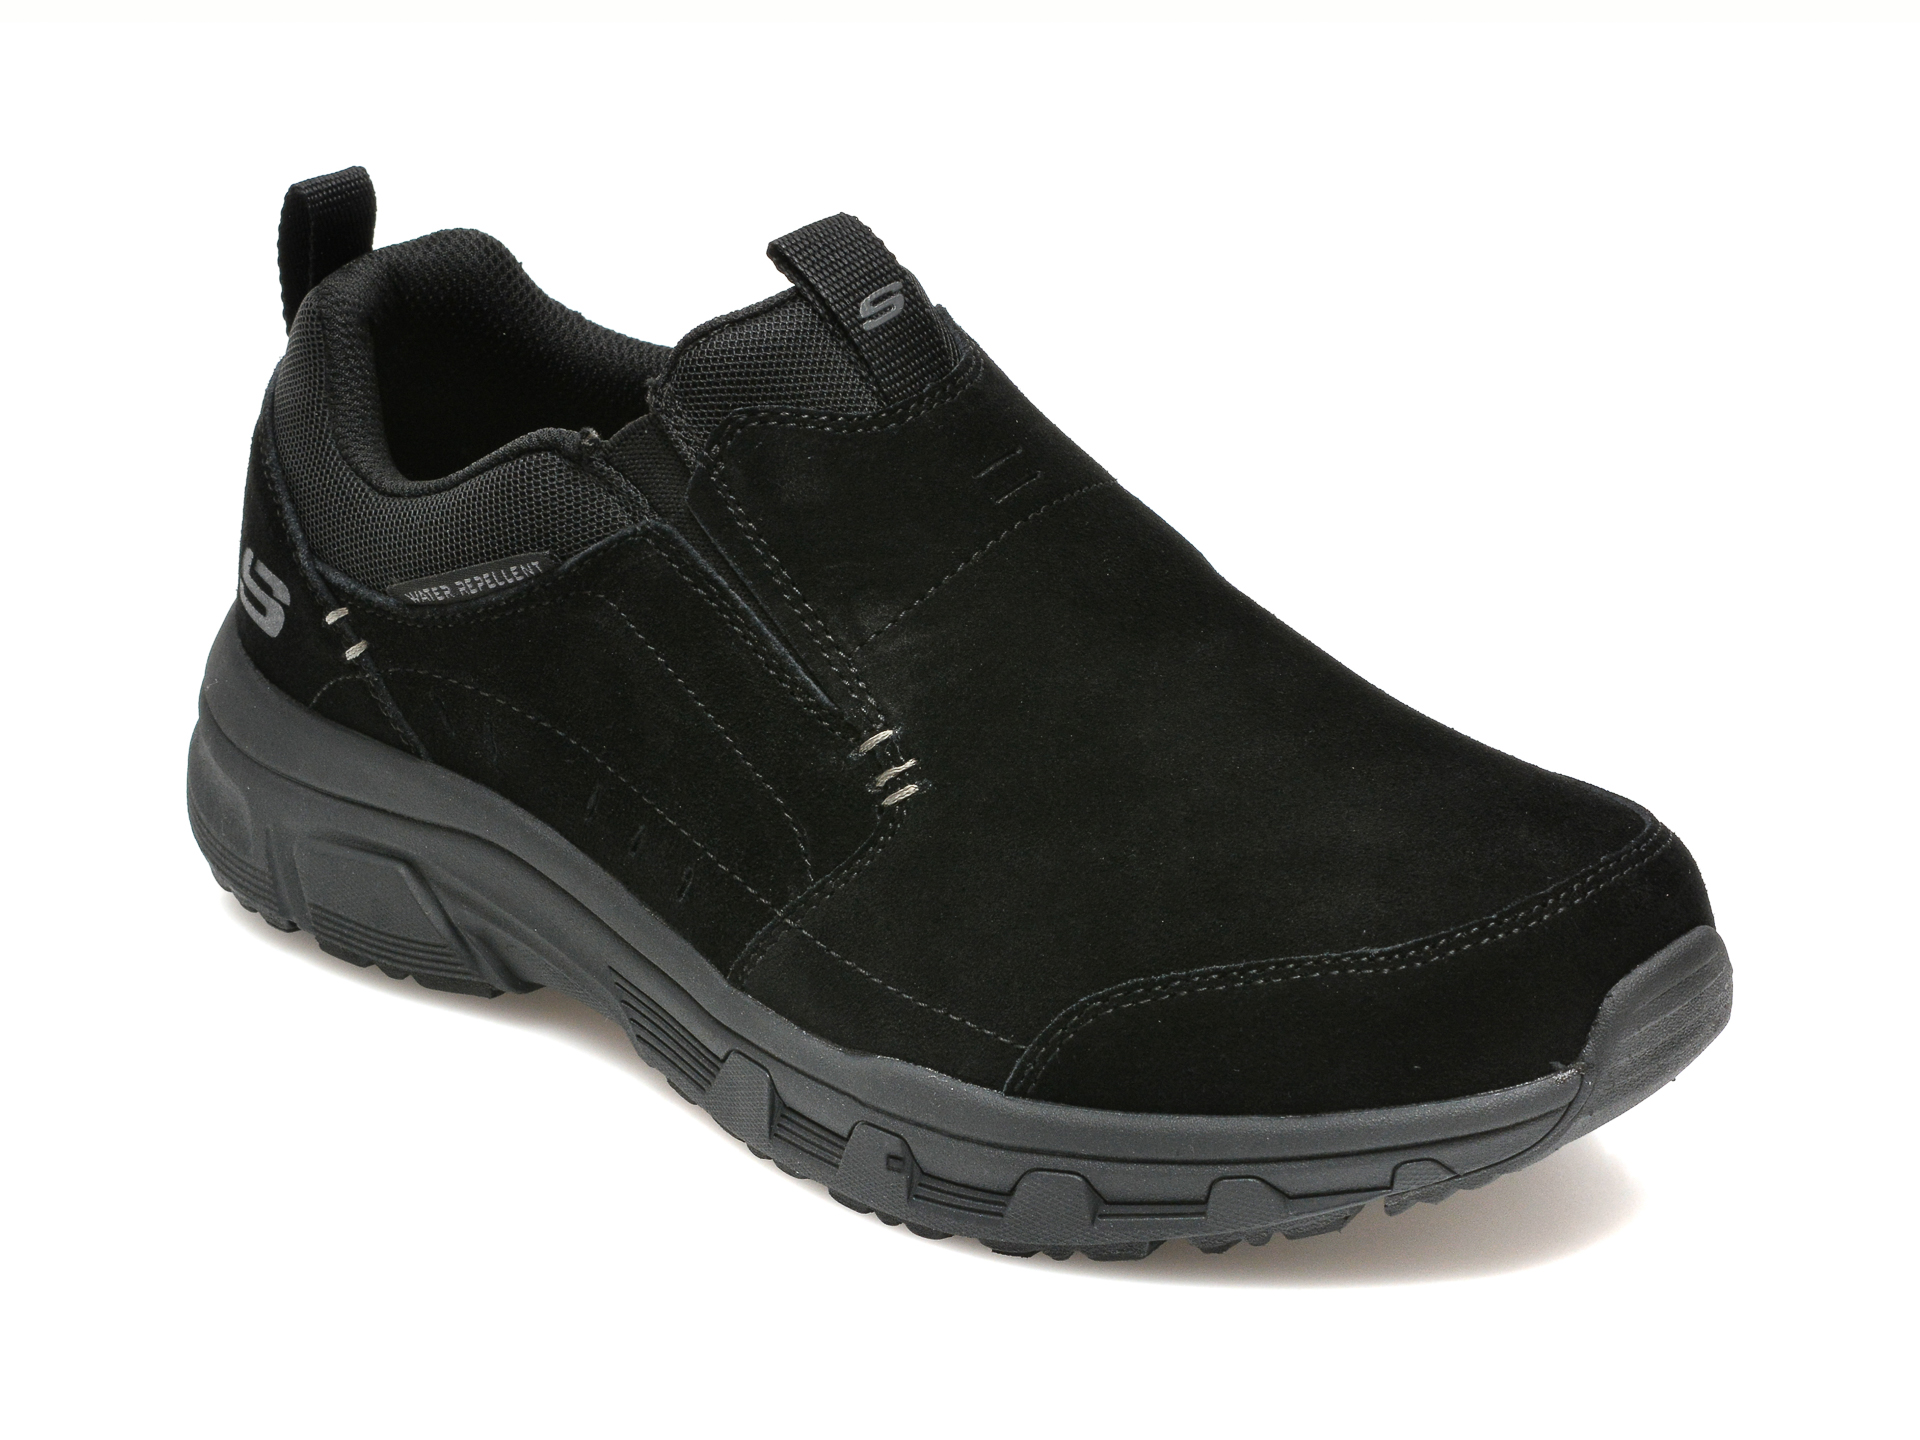 Pantofi sport SKECHERS negri, OAK CANYON, din piele intoarsa Skechers